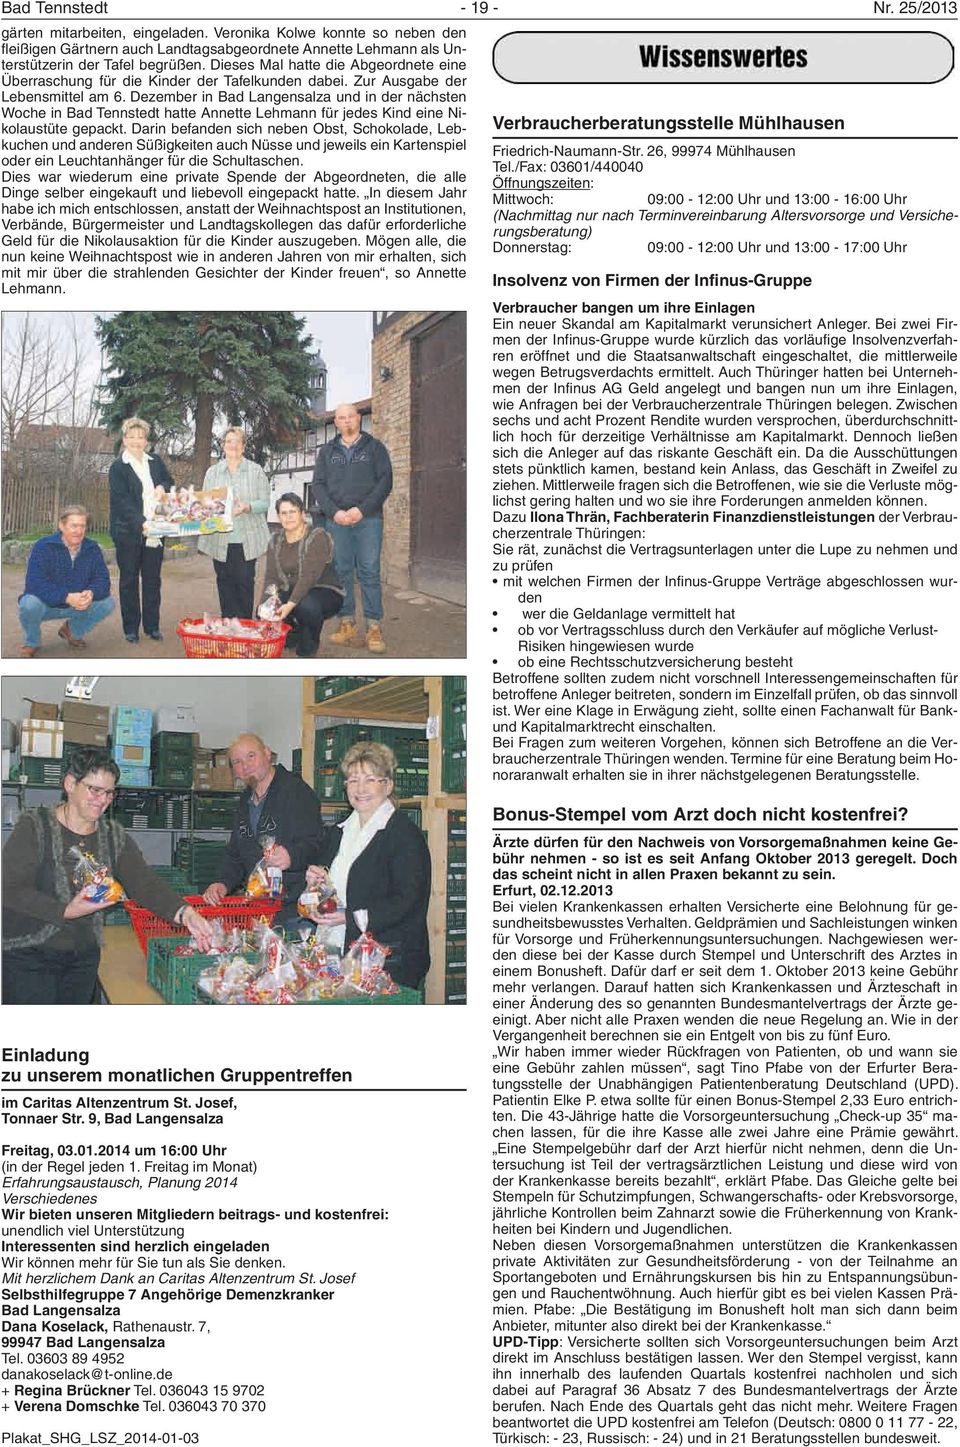 Dezember in Bad Langensalza und in der nächsten Woche in Bad Tennstedt hatte Annette Lehmann für jedes Kind eine Nikolaustüte gepackt.